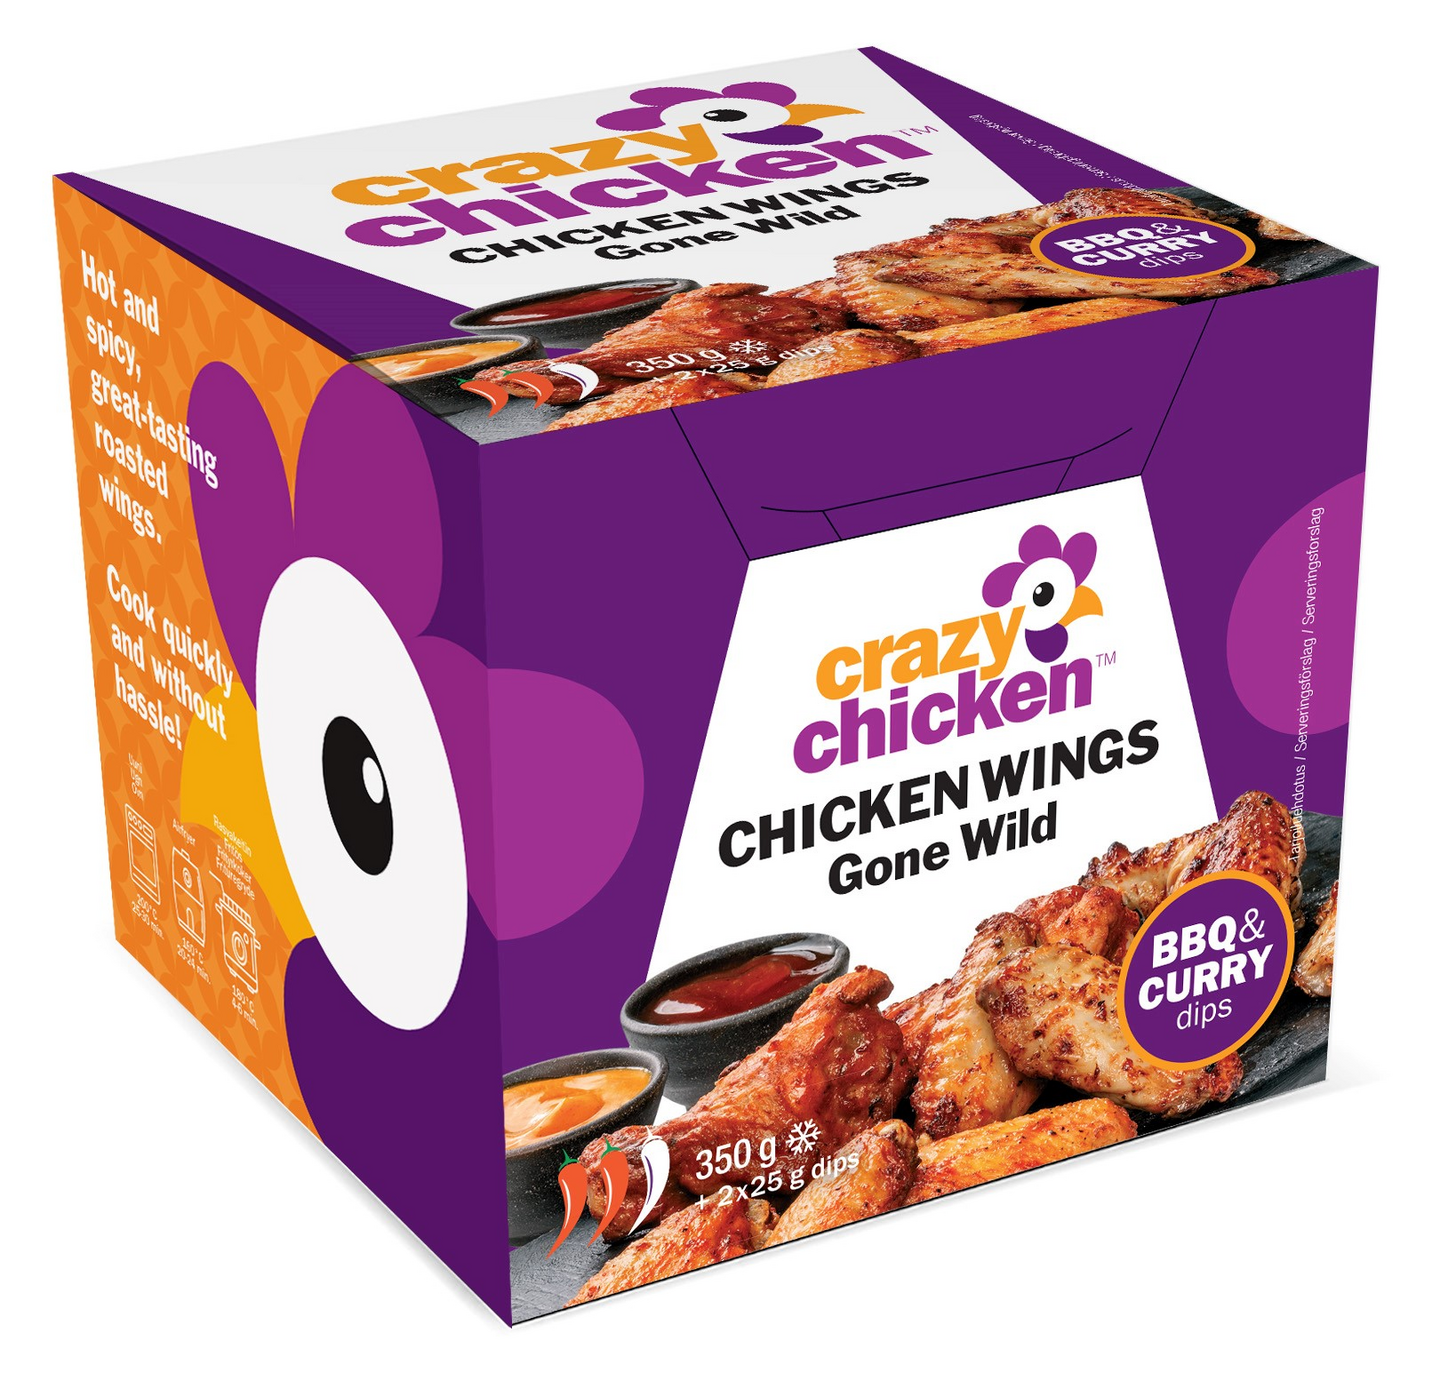 Crazy Chicken chicken wings gone wild - paahdetut mausteiset kanansiivet 350g + kastike 2x25g pakast